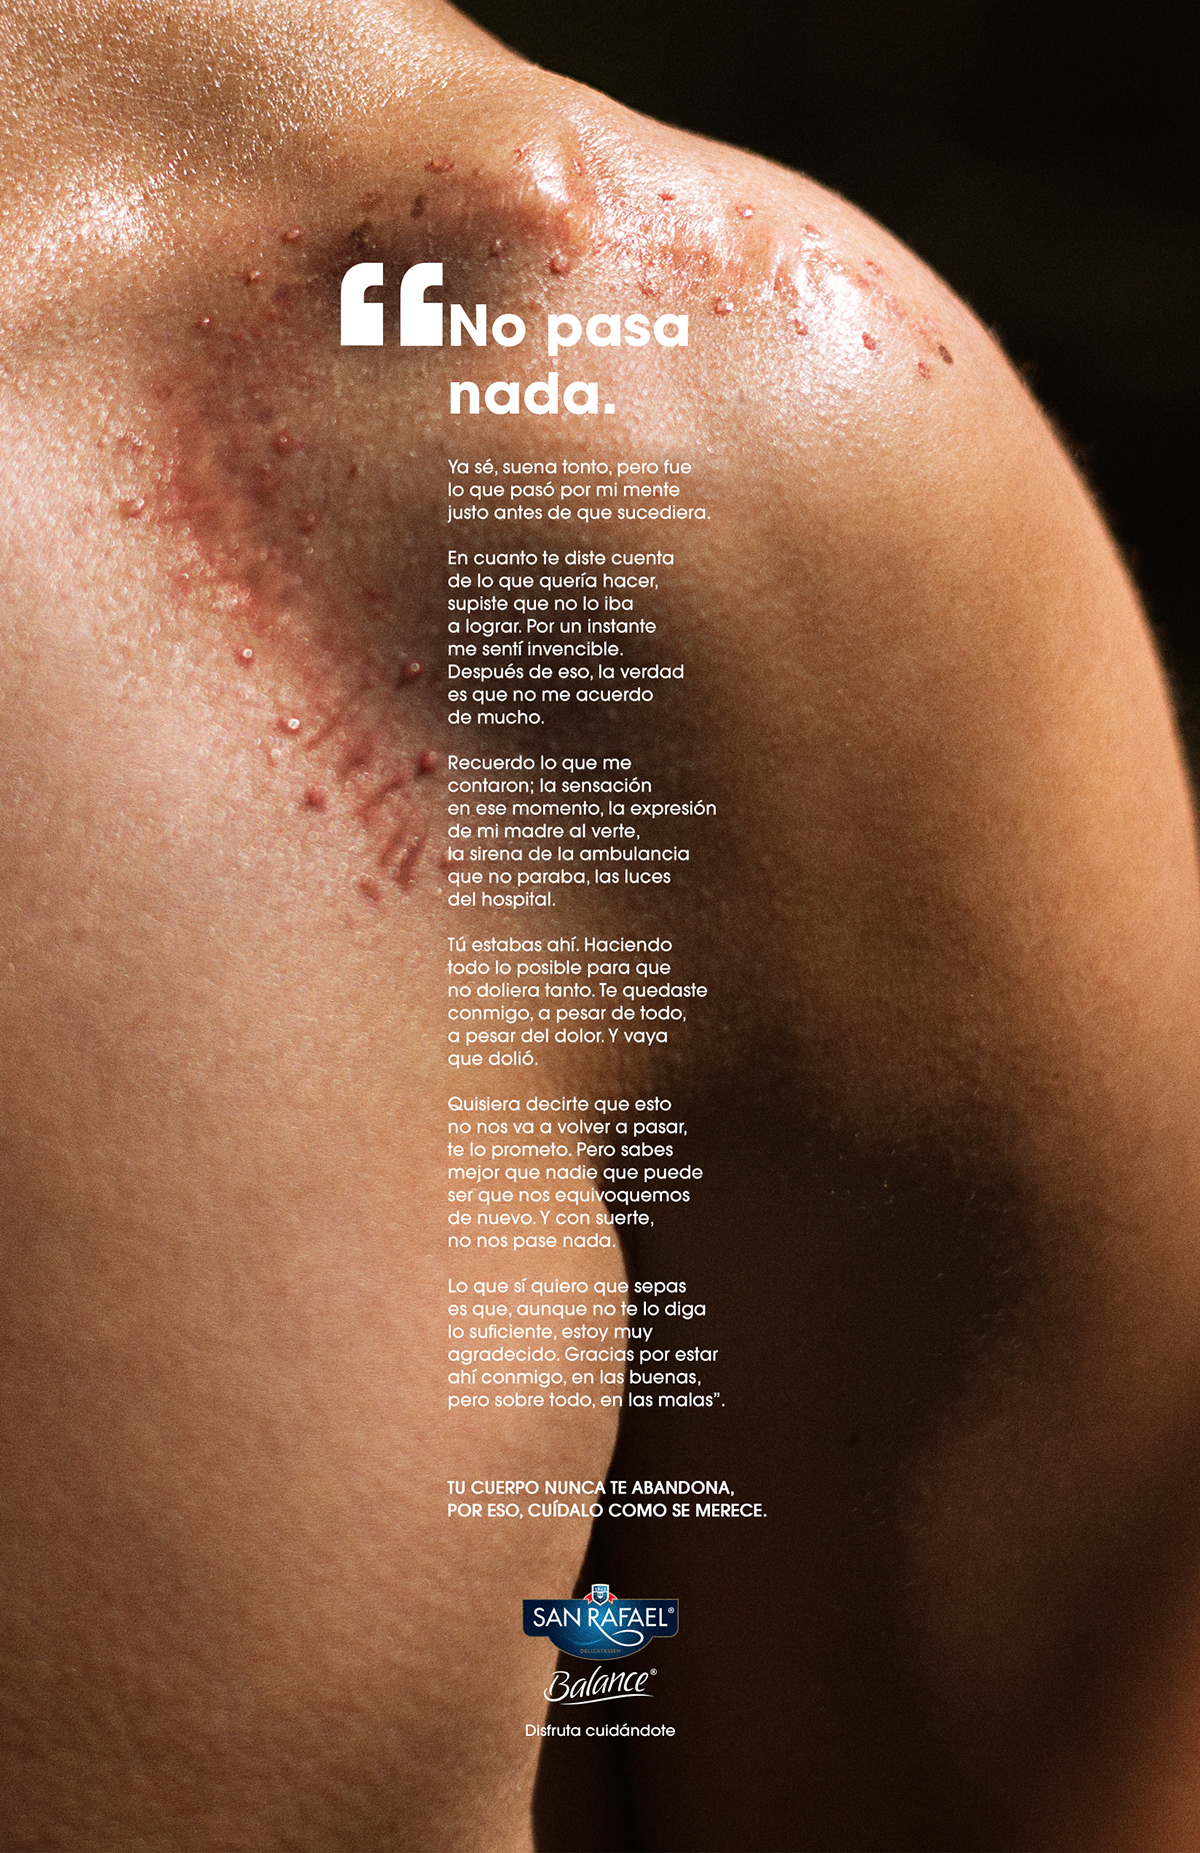 Advertising  balance Cicatriz cuerpo embarazo pregnancy publicidad san rafael scar vitiligo